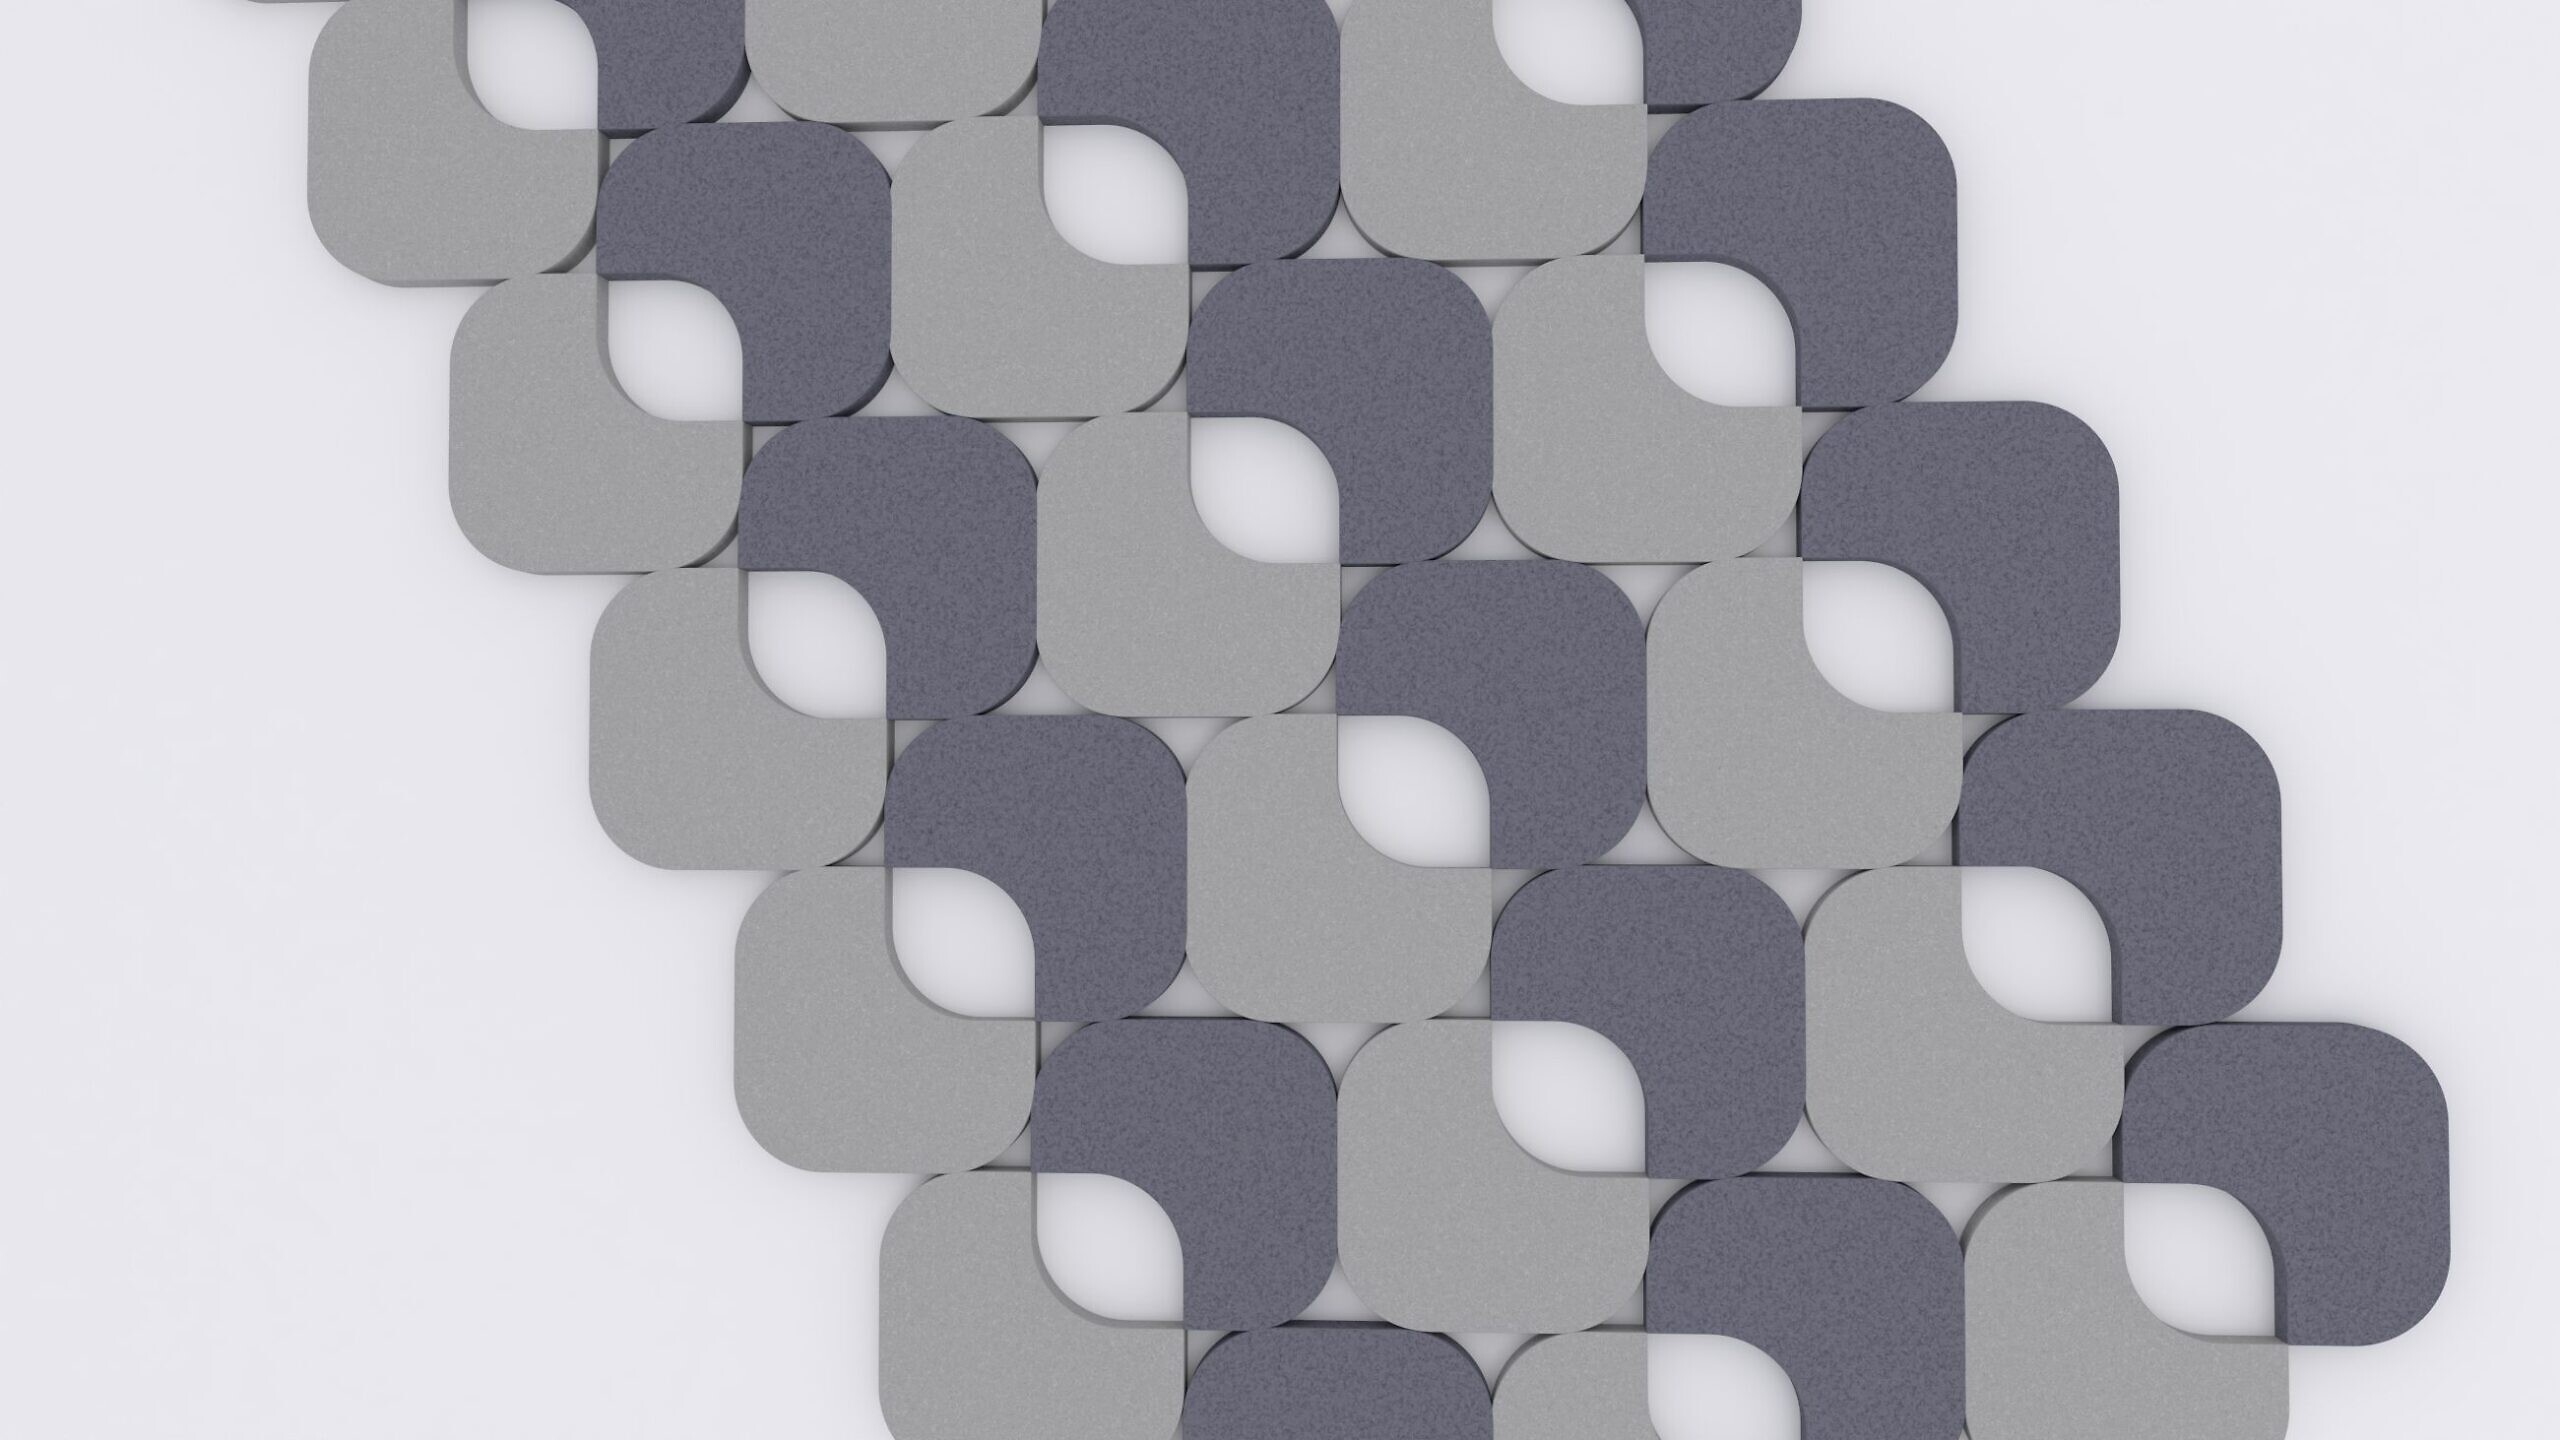 Panel akustyczny marki Fluffo o geometrycznym wzorze - S Cut - w różnych odcieniach szarości.